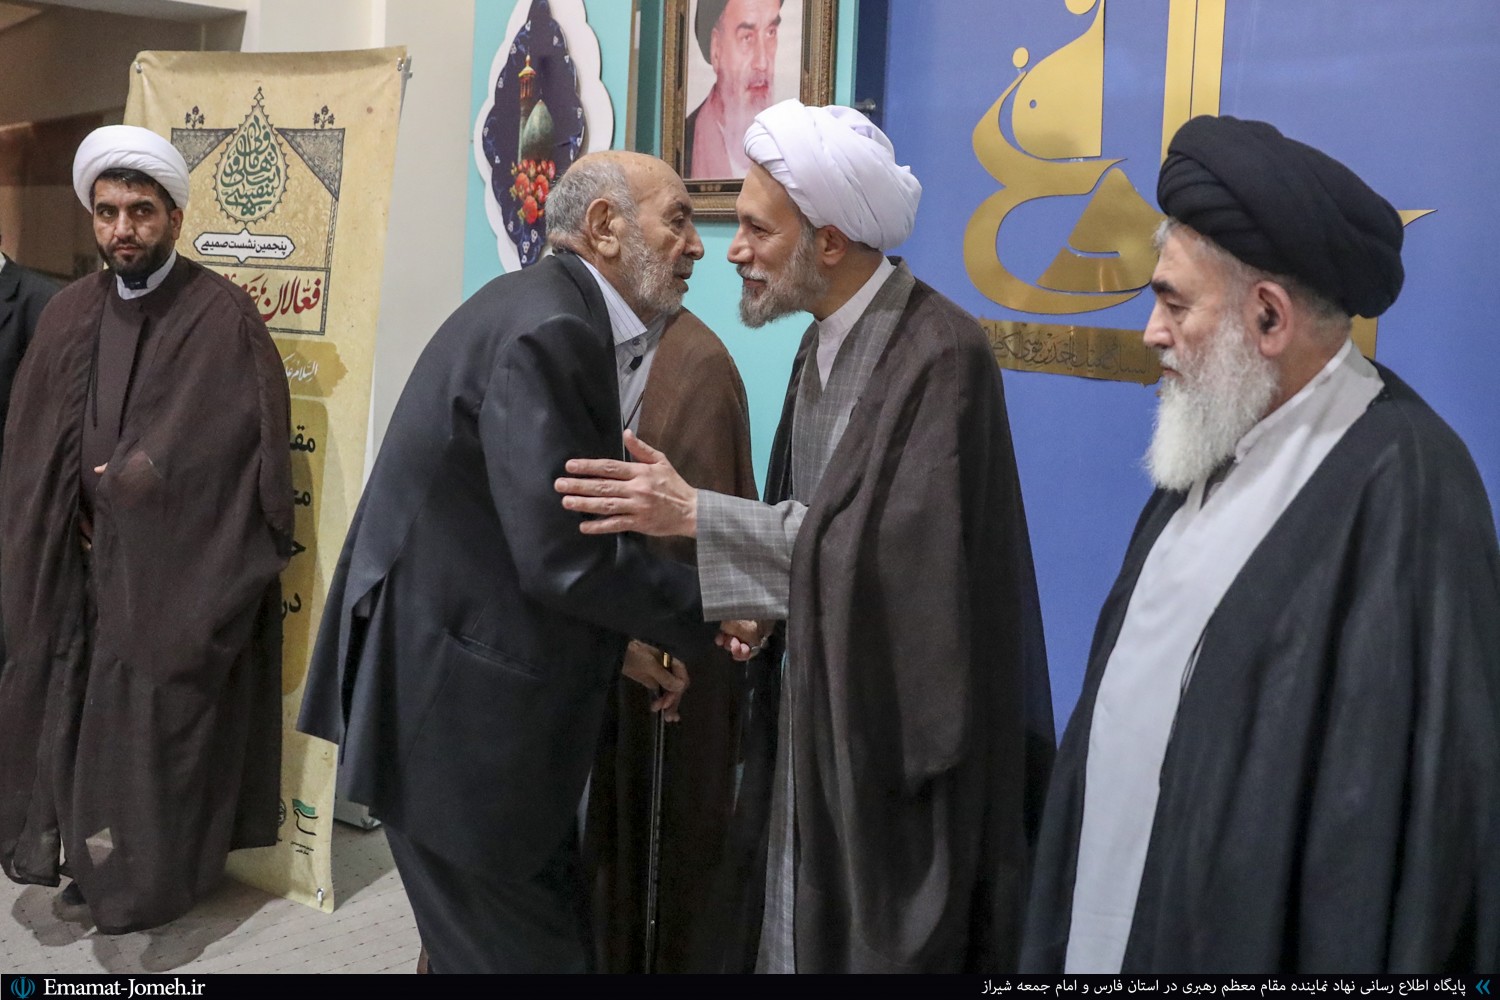 جلسه تقدیر از فعالان و پیشکسوتان هیئات مذهبی شیراز با حضور آیت الله دژکام